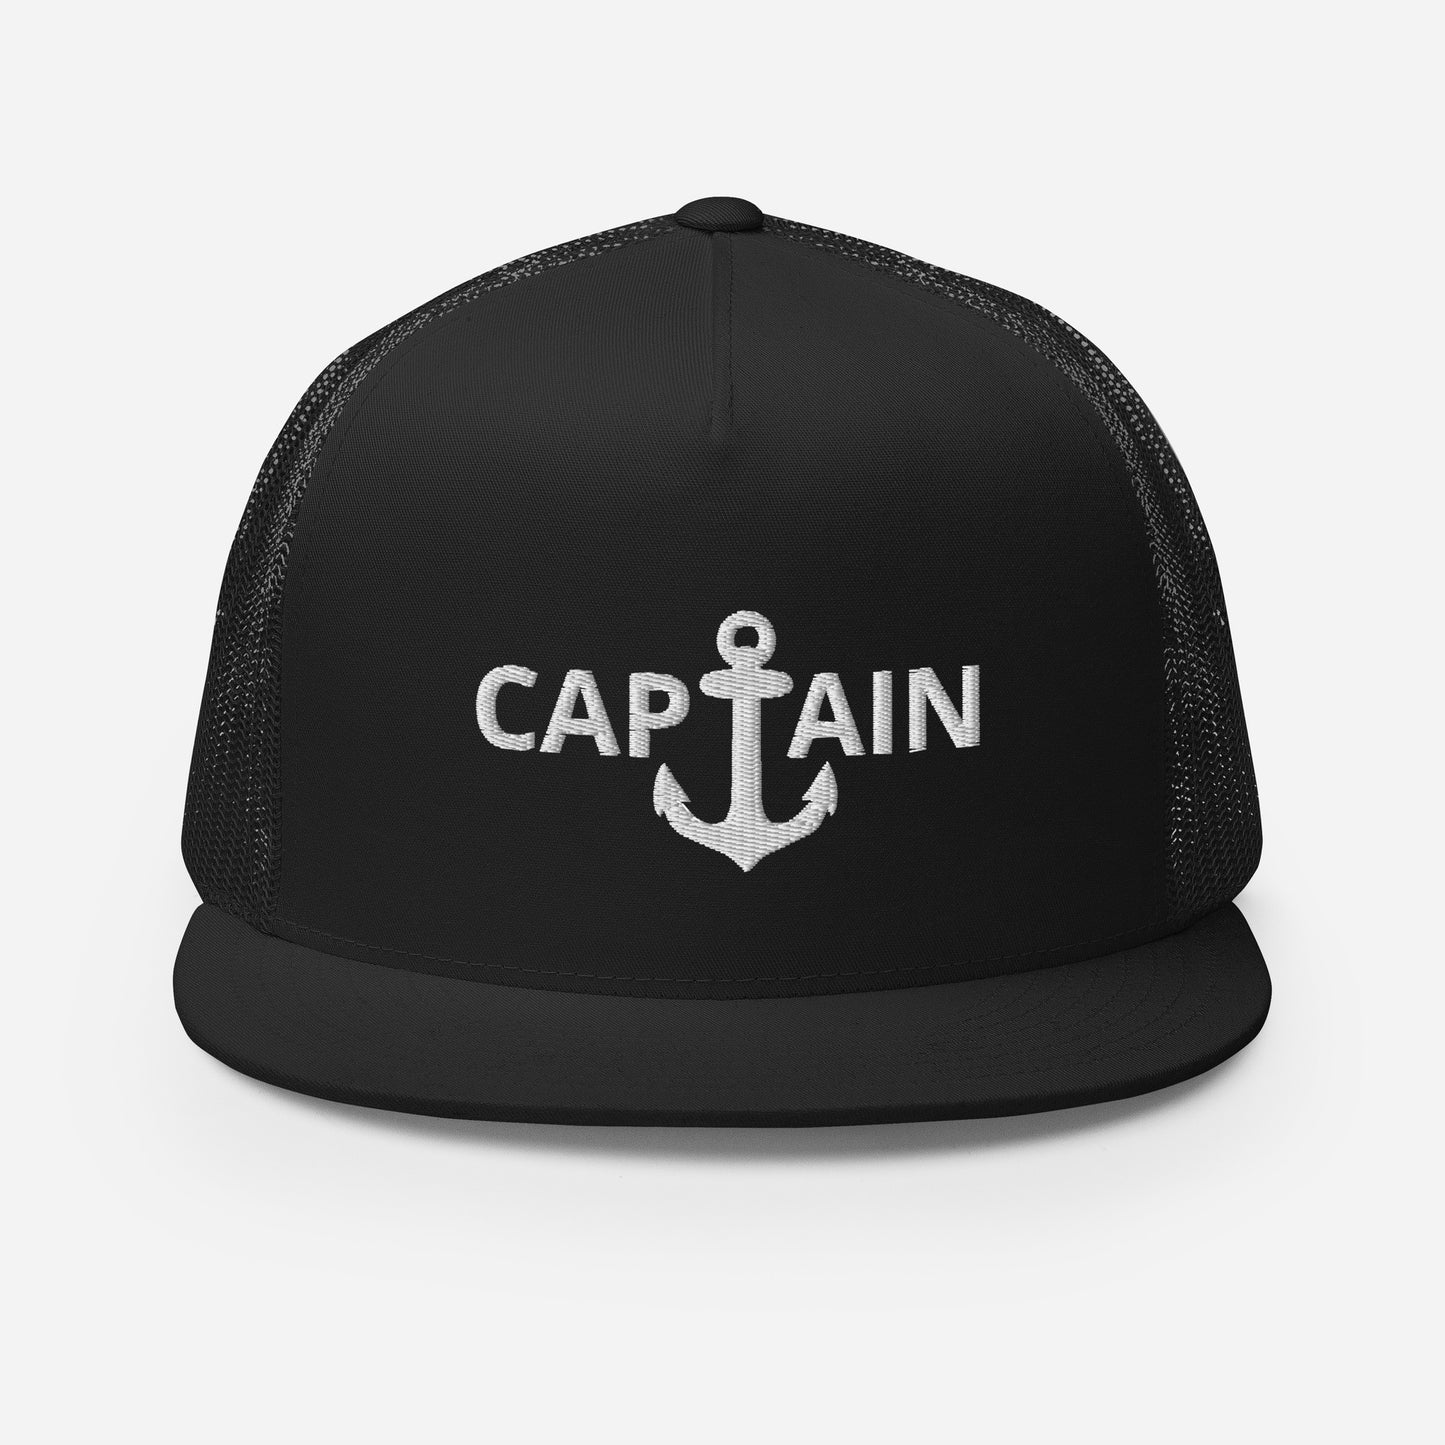 "Captain" trucker cap